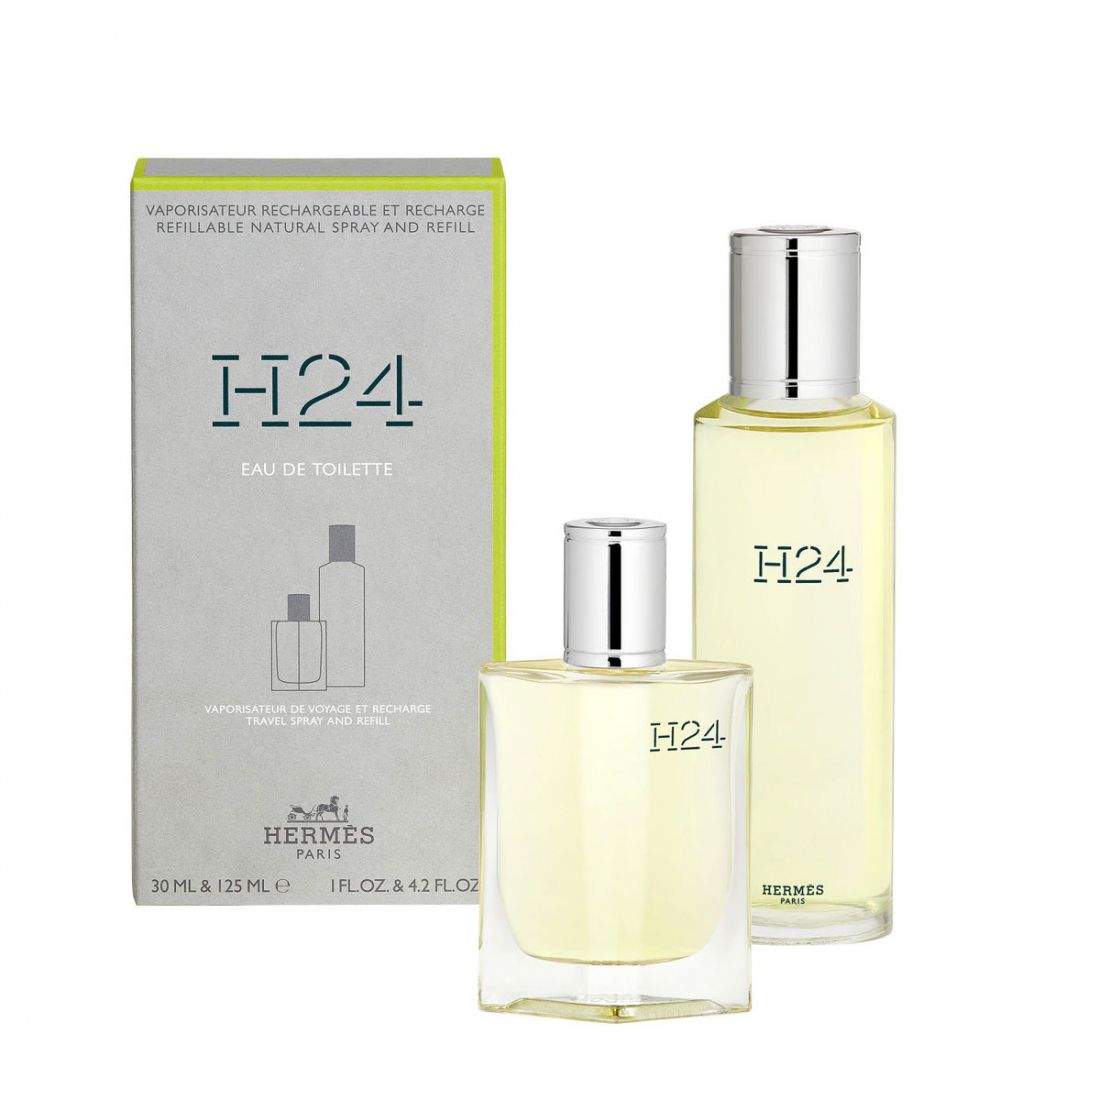 Hermès - Coffret de parfum 'H24' - 2 Pièces